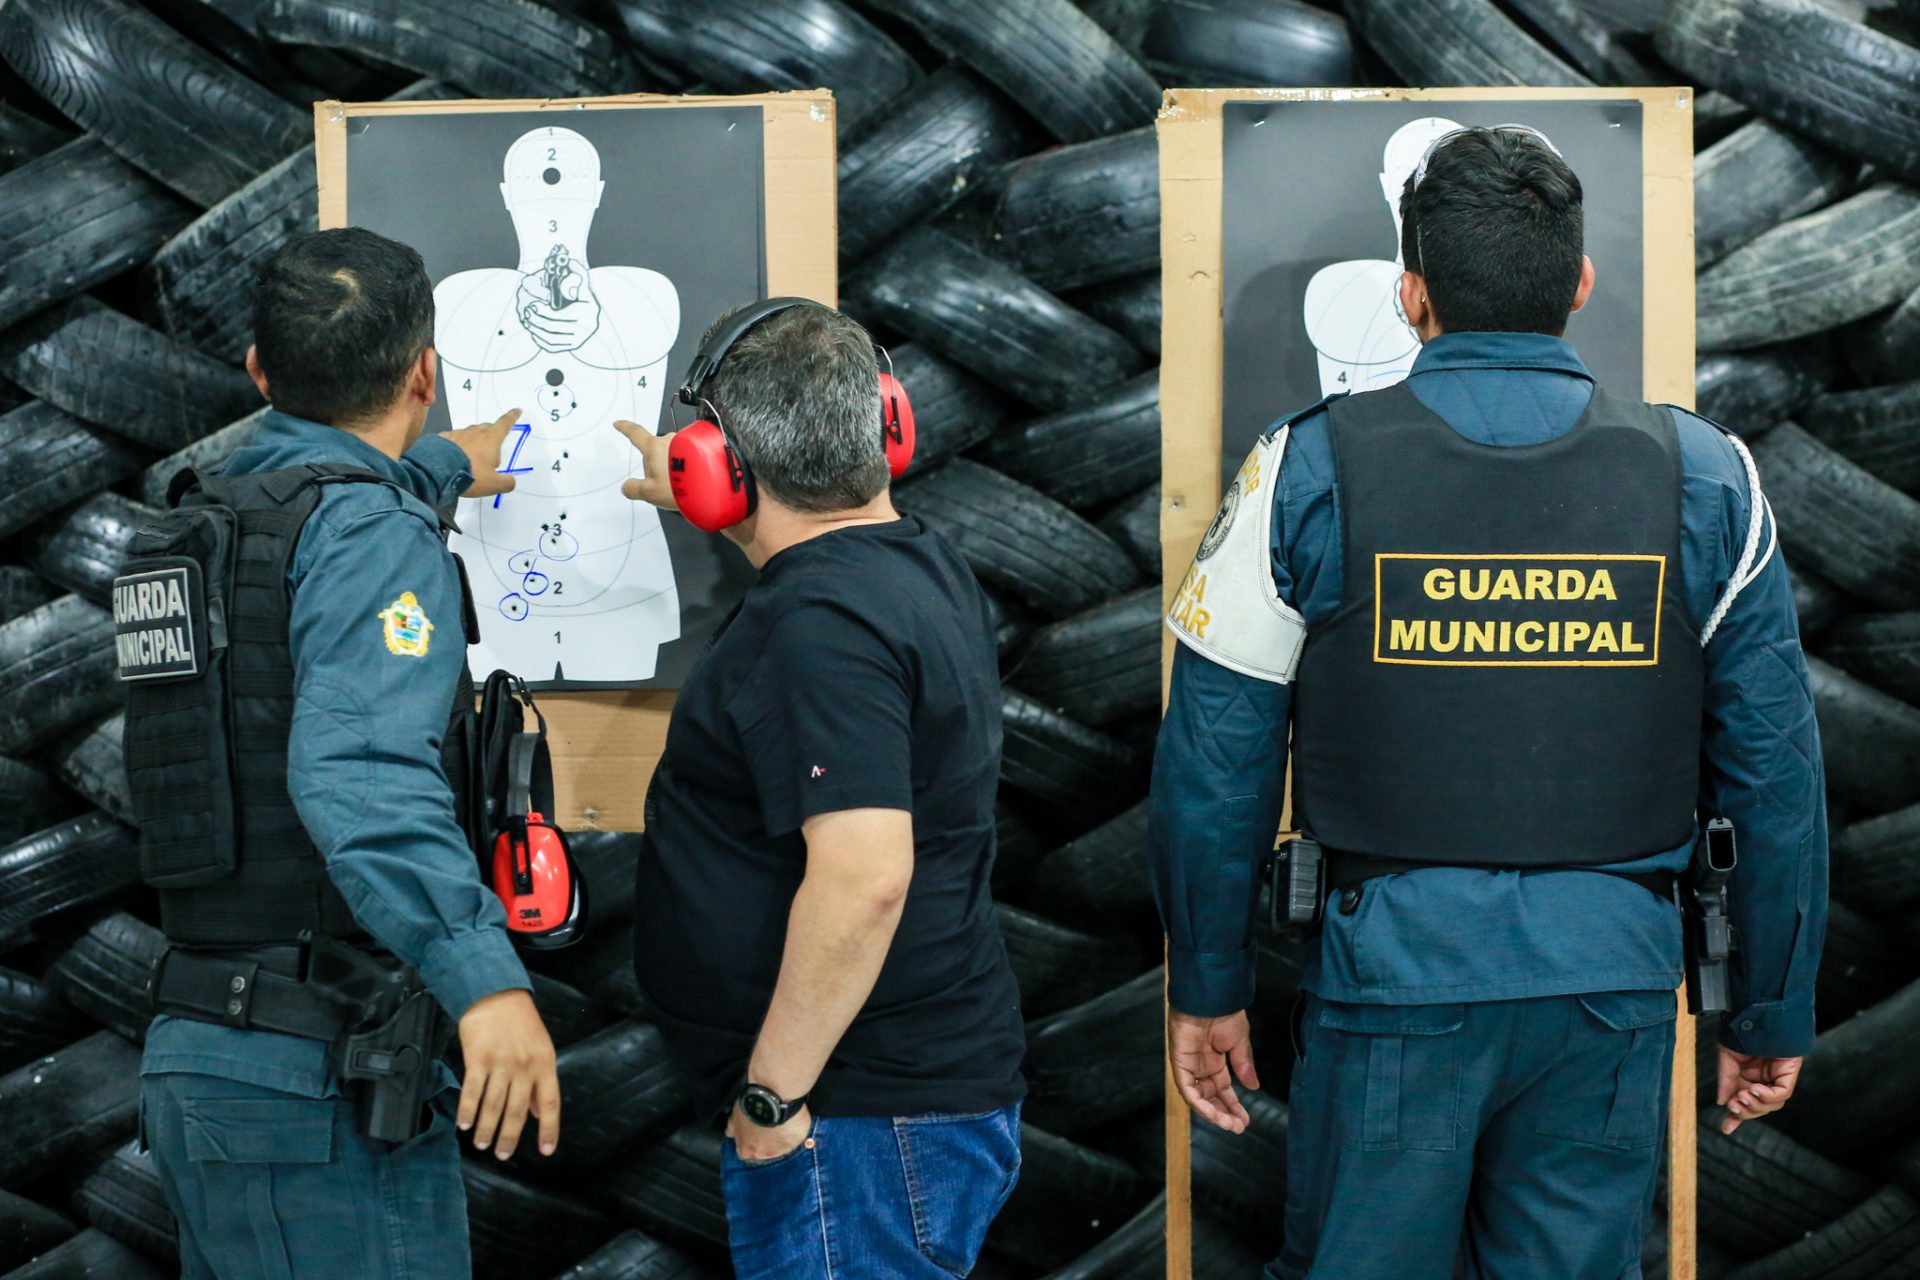 Guarda Municipal em treinamento de uso de armamento letal Foto - Antonio Pereira/Semcom